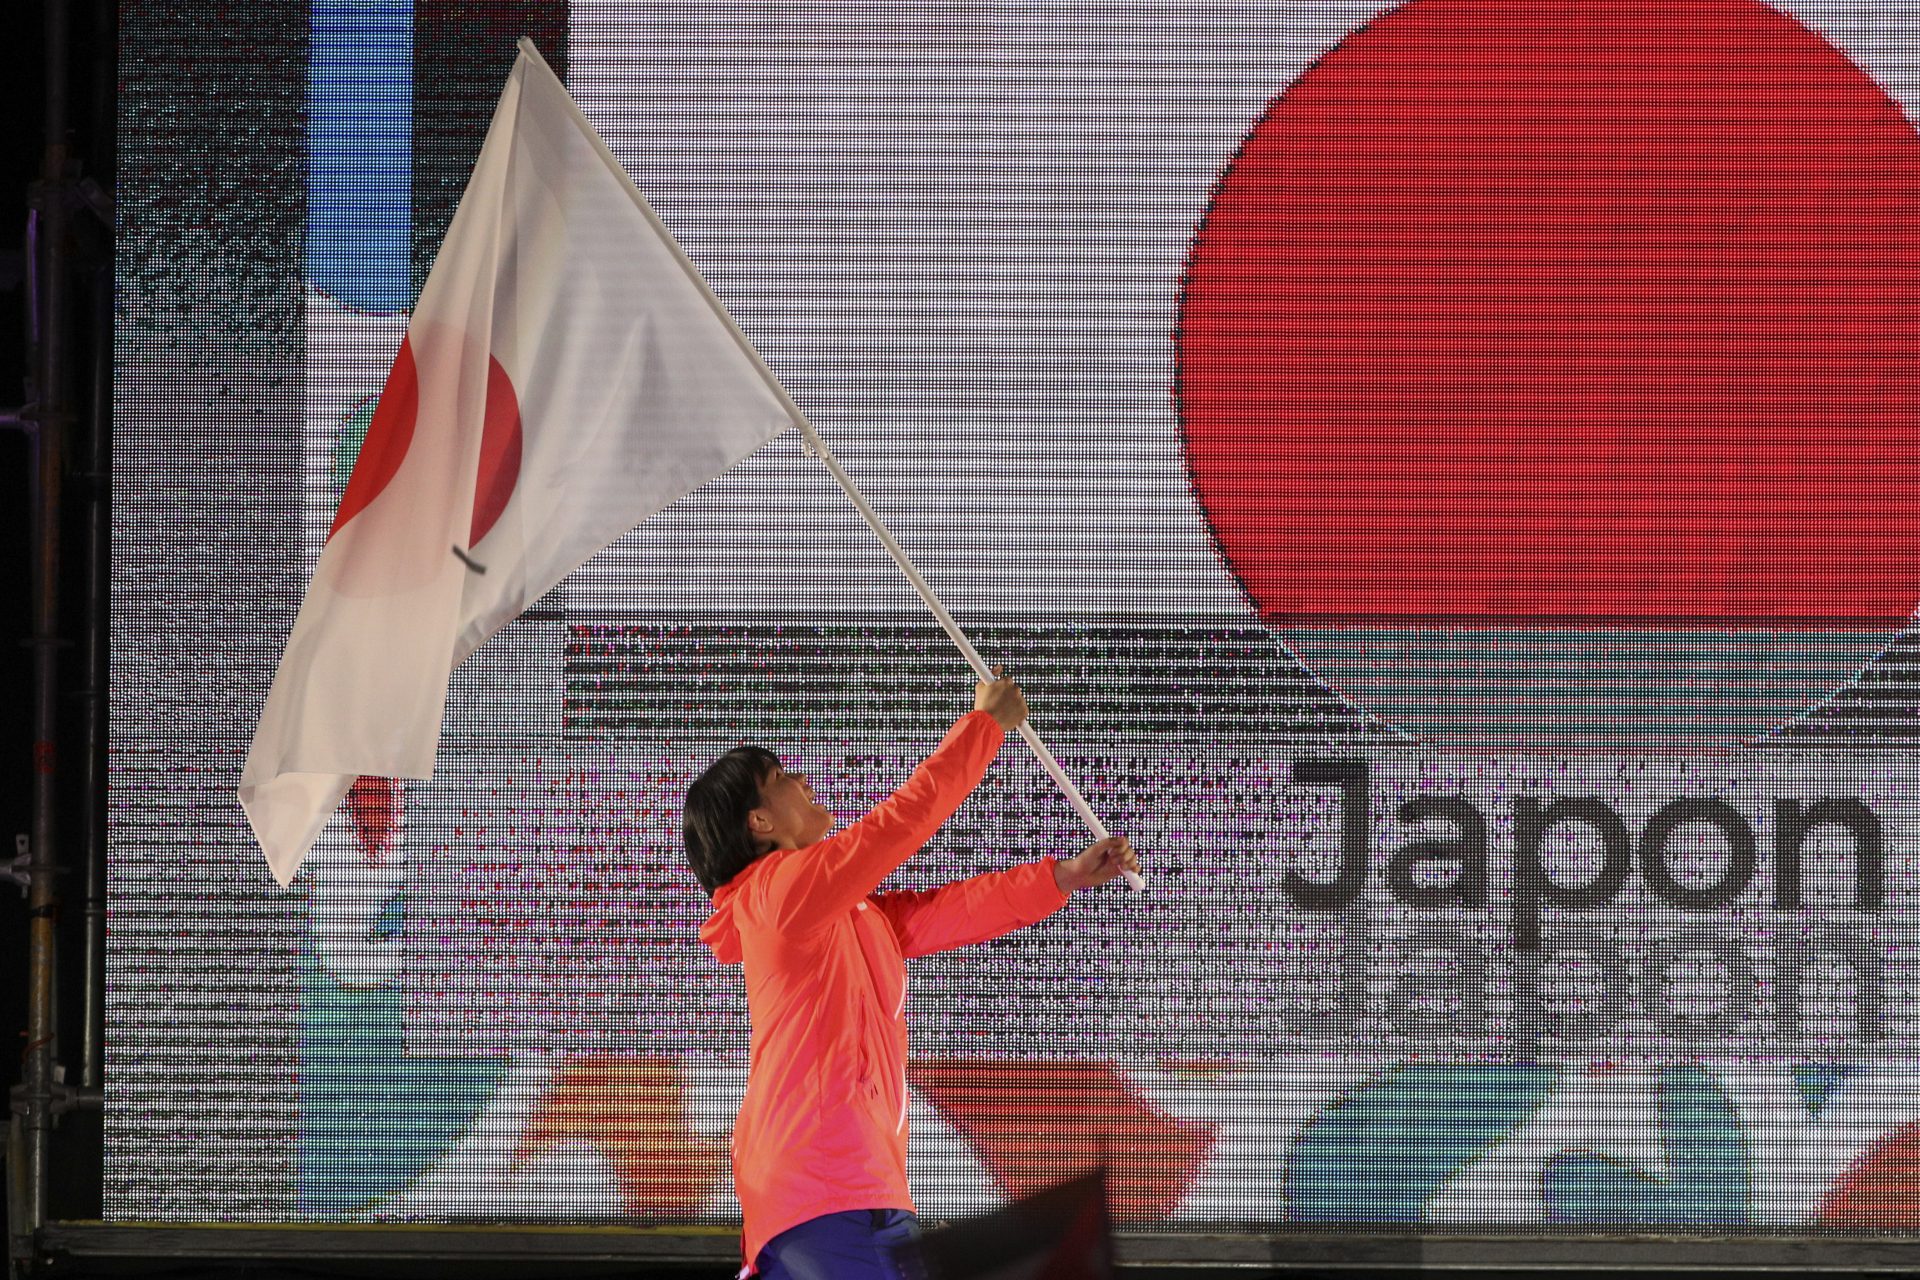 ユースオリンピック日本選手団の旗手